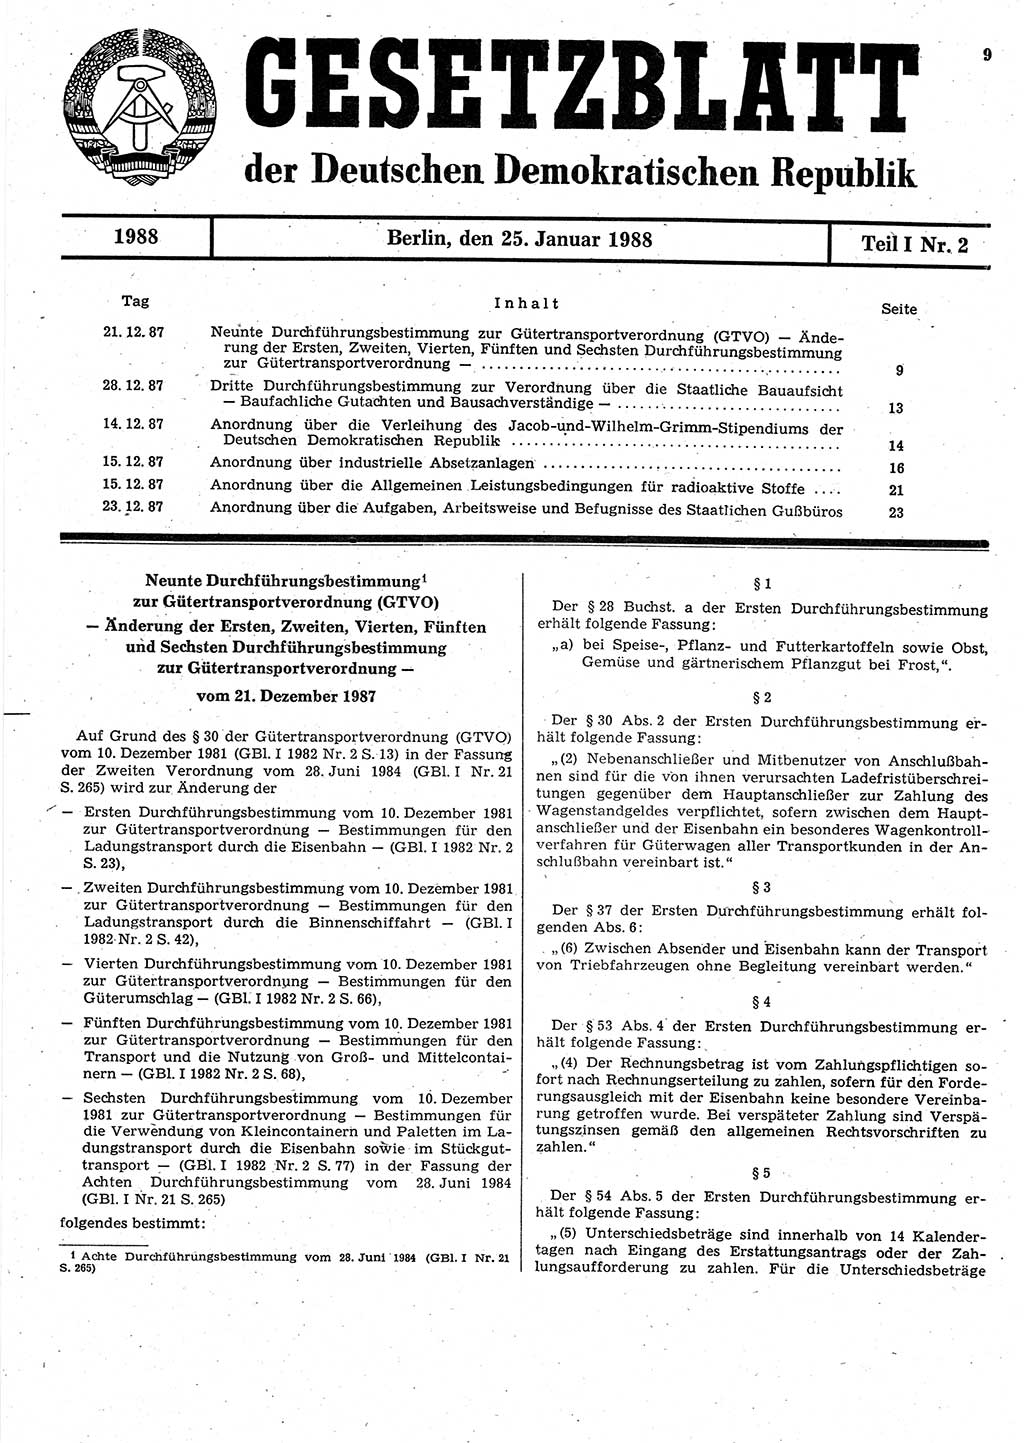 Gesetzblatt (GBl.) der Deutschen Demokratischen Republik (DDR) Teil Ⅰ 1988, Seite 9 (GBl. DDR Ⅰ 1988, S. 9)